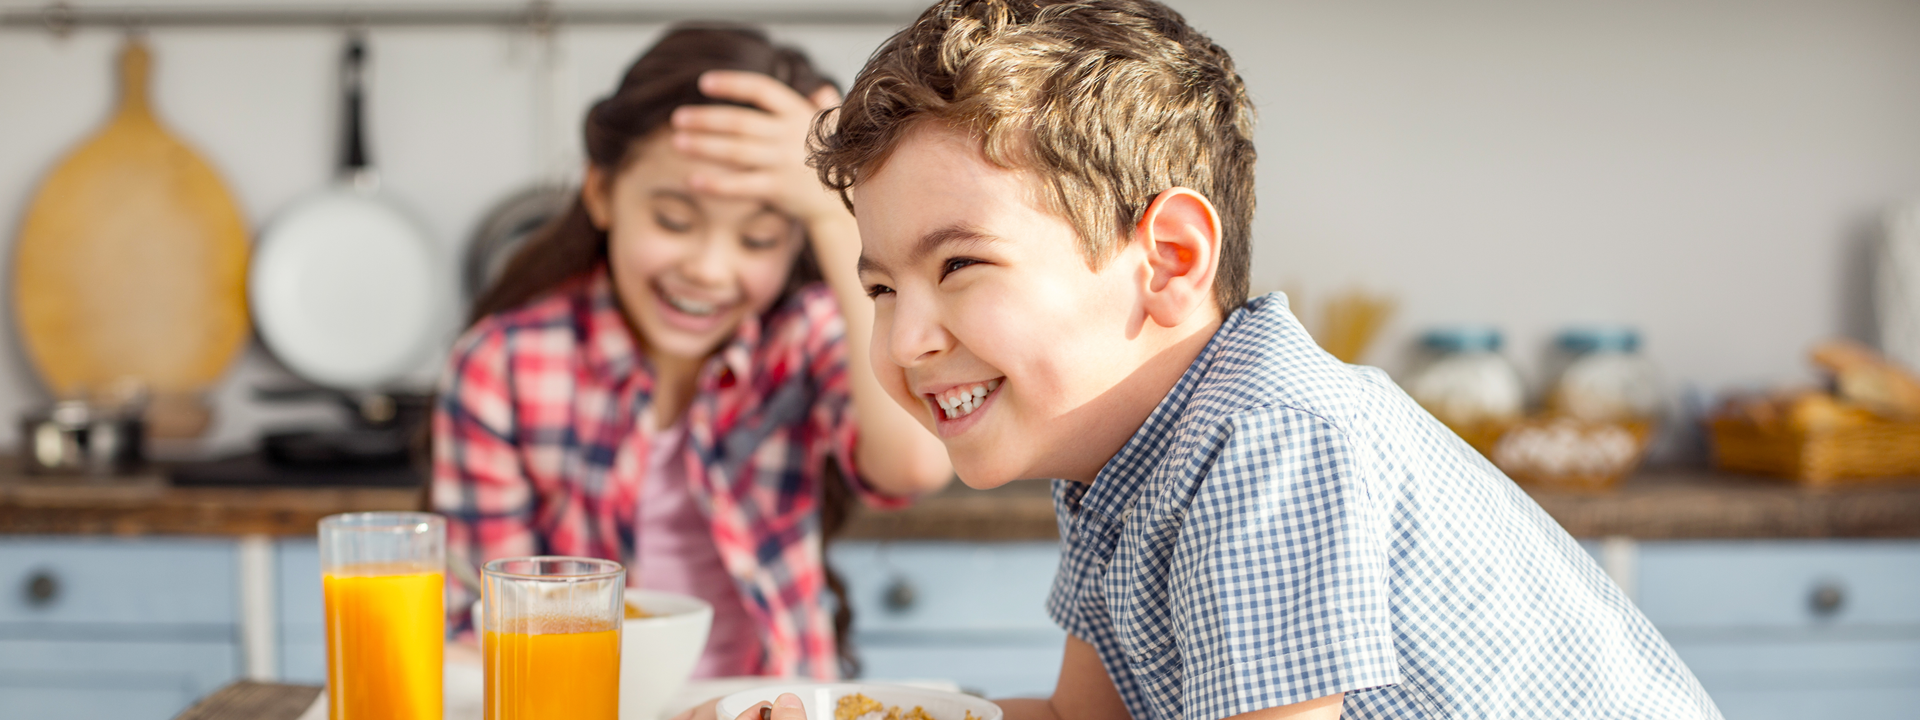 Digestive Health in Children